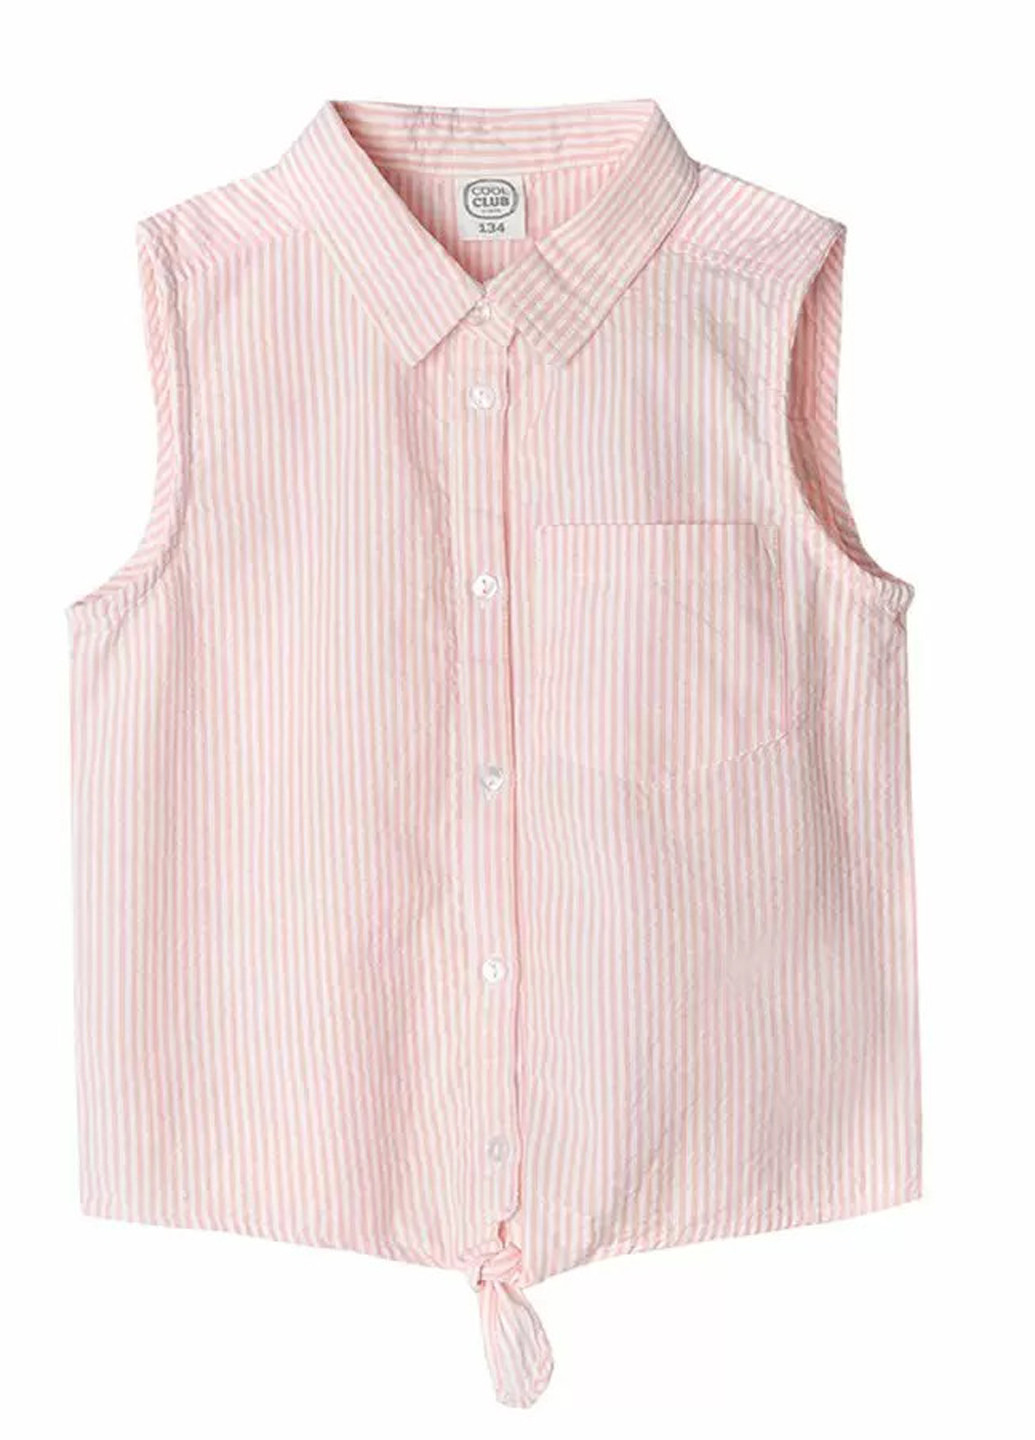 Светло-розовая в полоску блузка Cool Club летняя